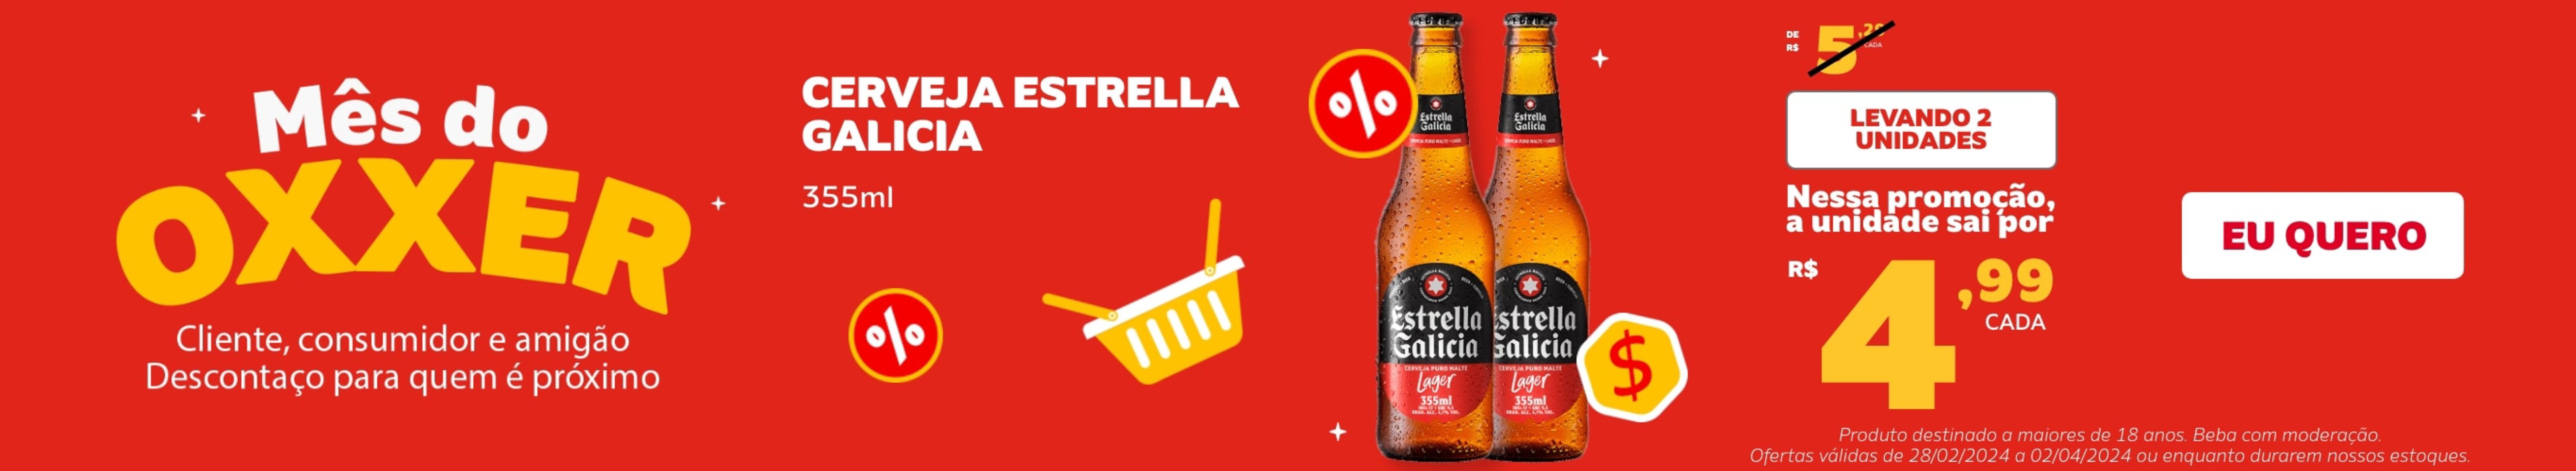 Cerveja Estrella levando 2 por preço especial